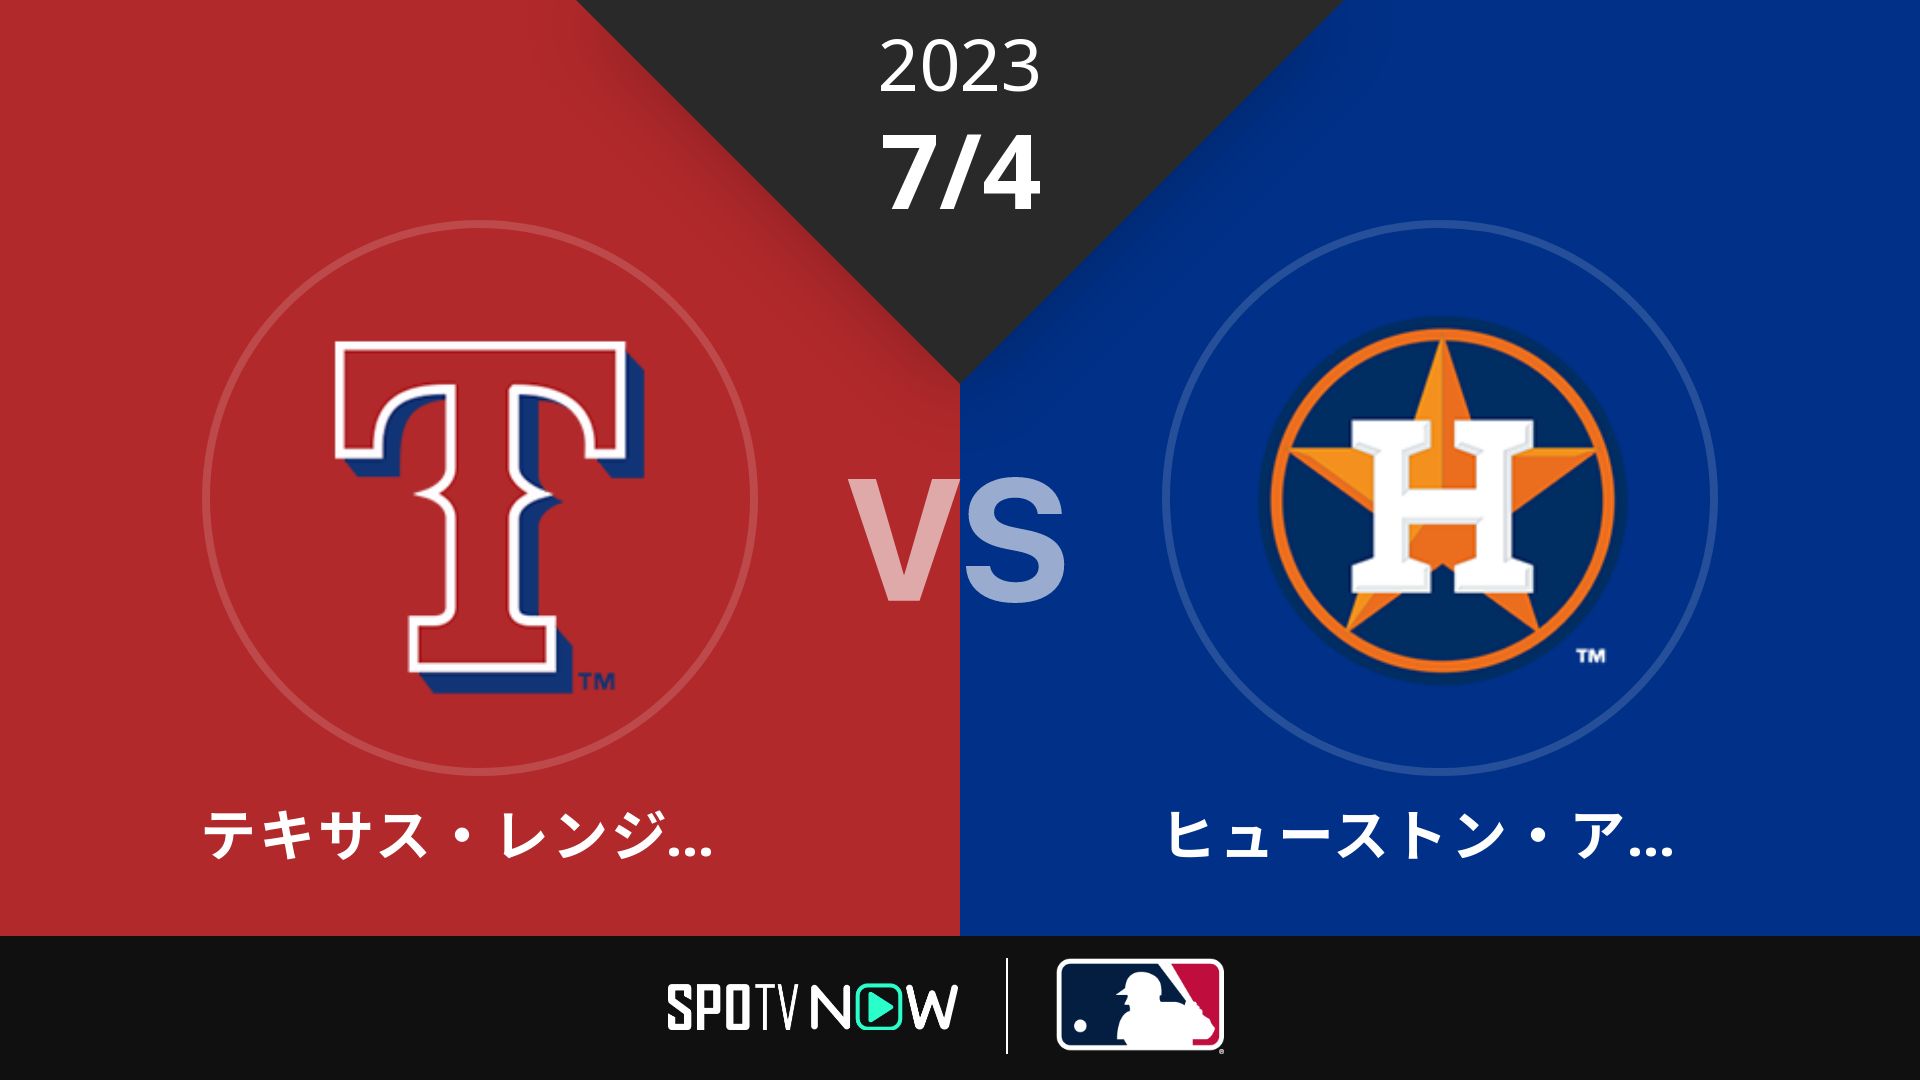 2023/7/4 レンジャーズ vs アストロズ [MLB]